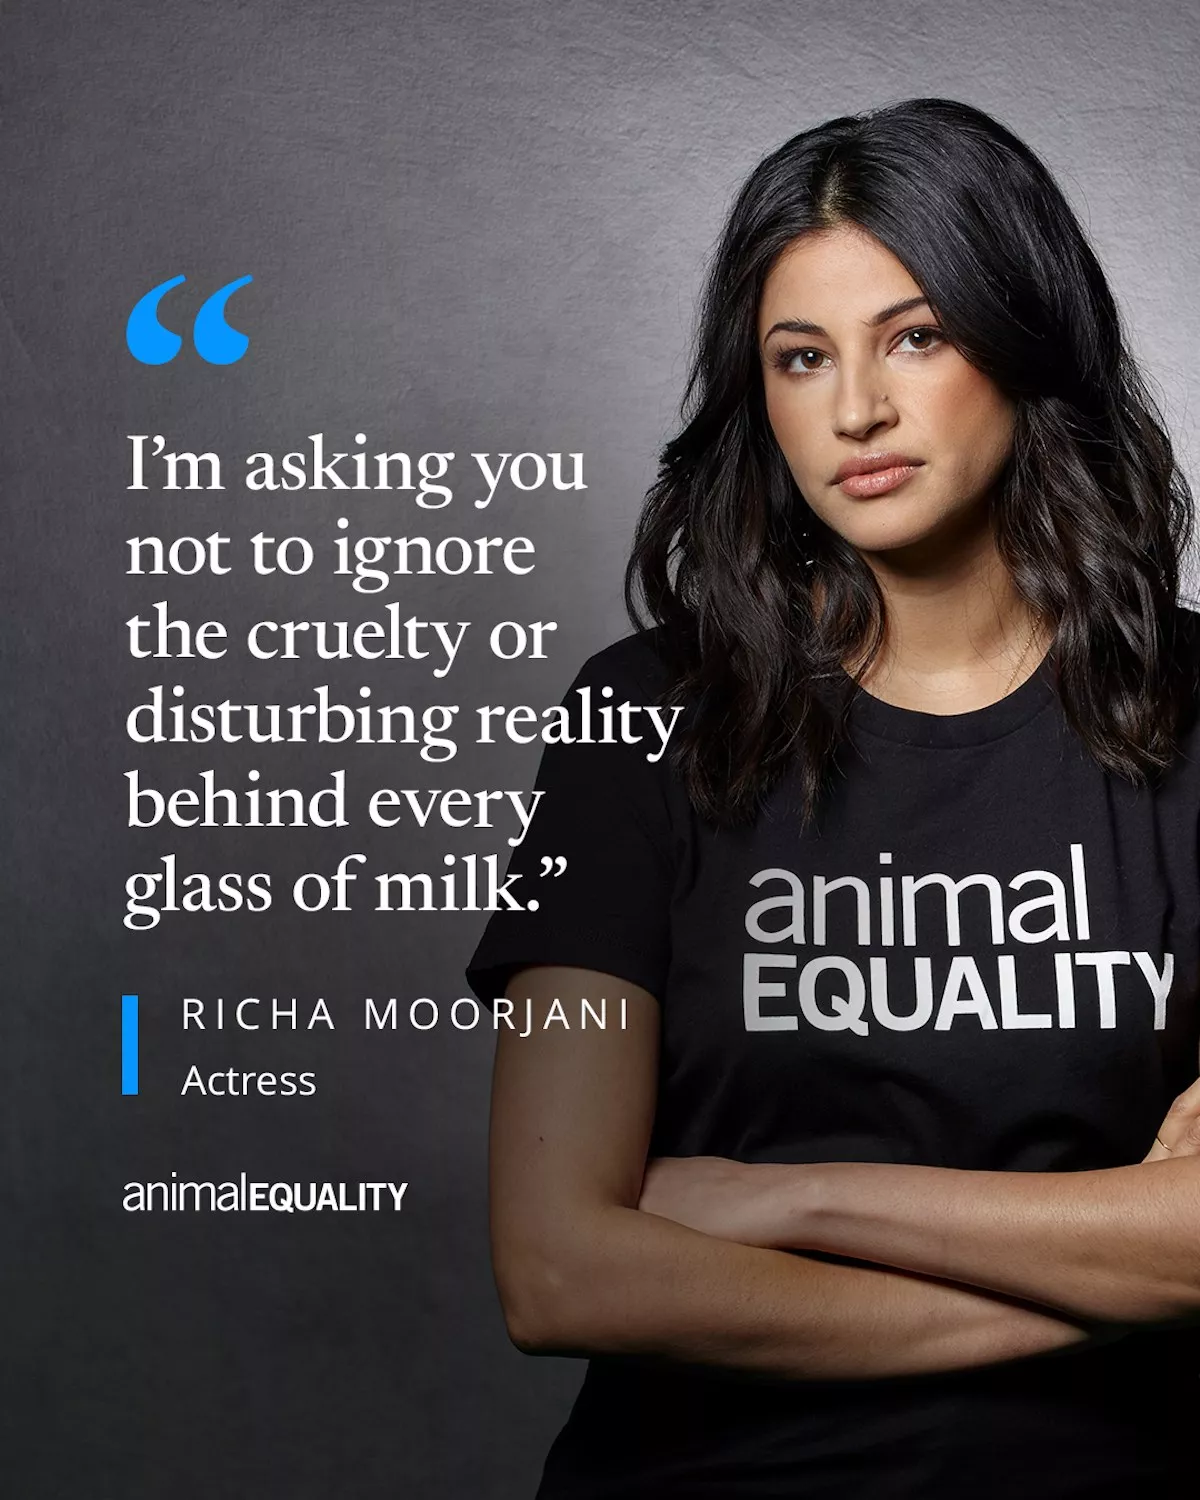 Richa Moorjani using an Animal Equality shirt